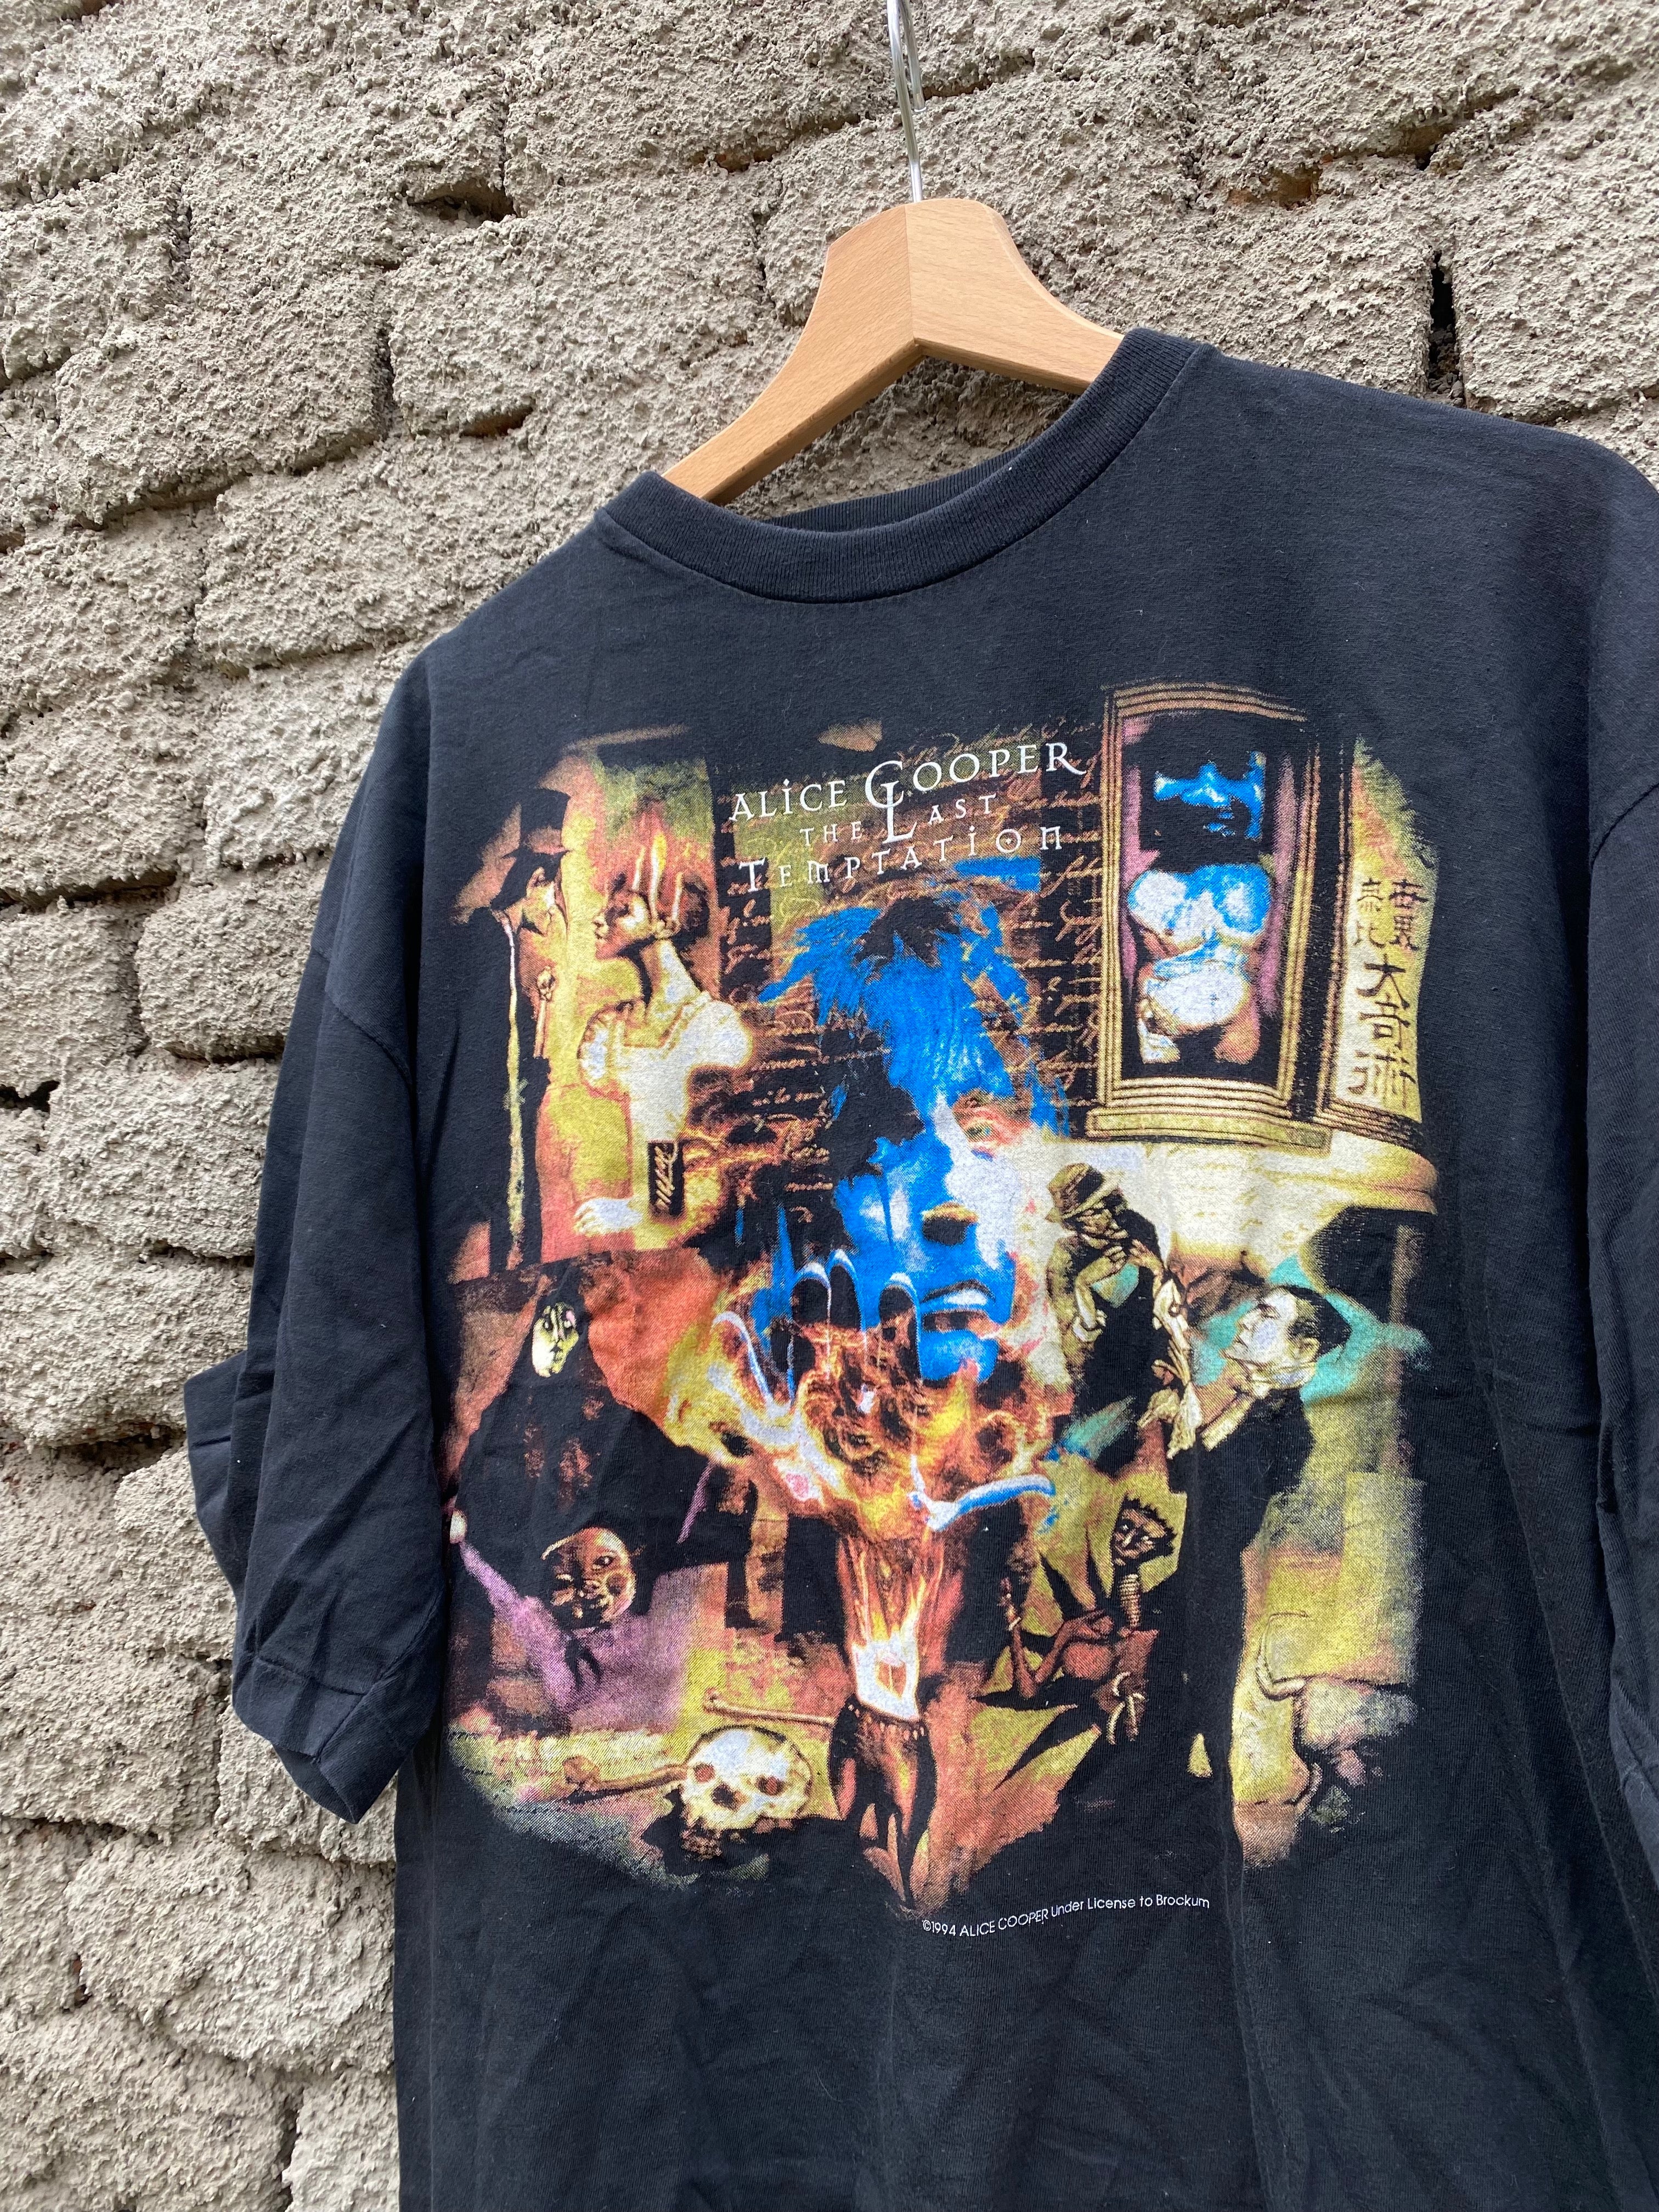 Vintage Alice Cooper "The Last Temptation" 1994 t-shirt - size XL